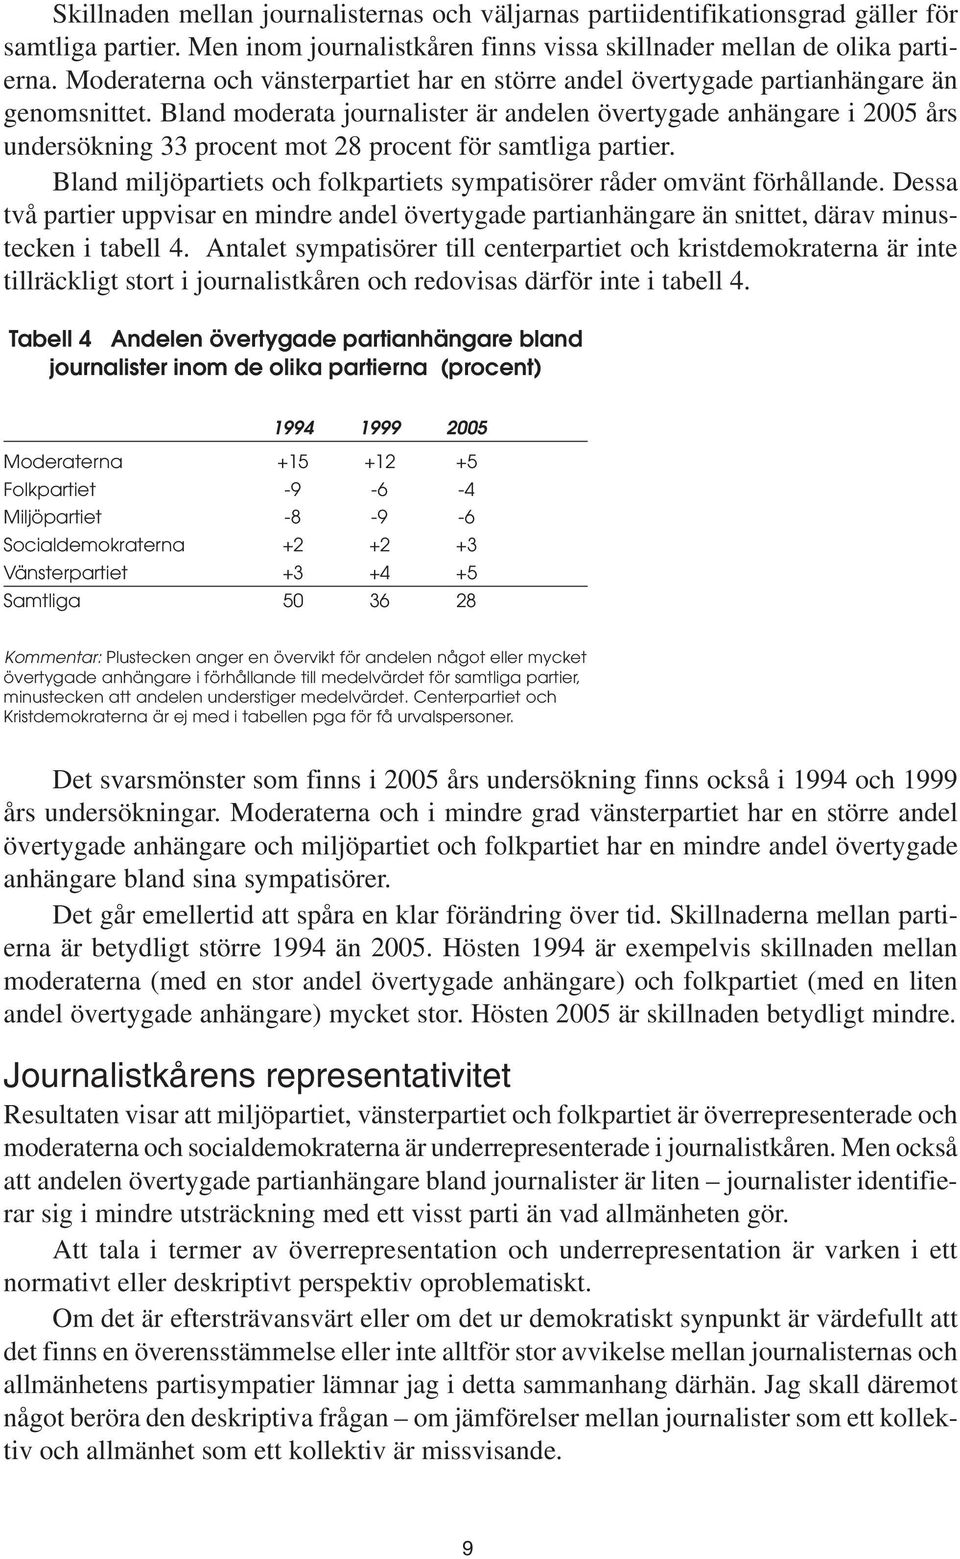 Bland moderata journalister är andelen övertygade anhängare i 2005 års undersökning 33 procent mot 28 procent för samtliga partier.